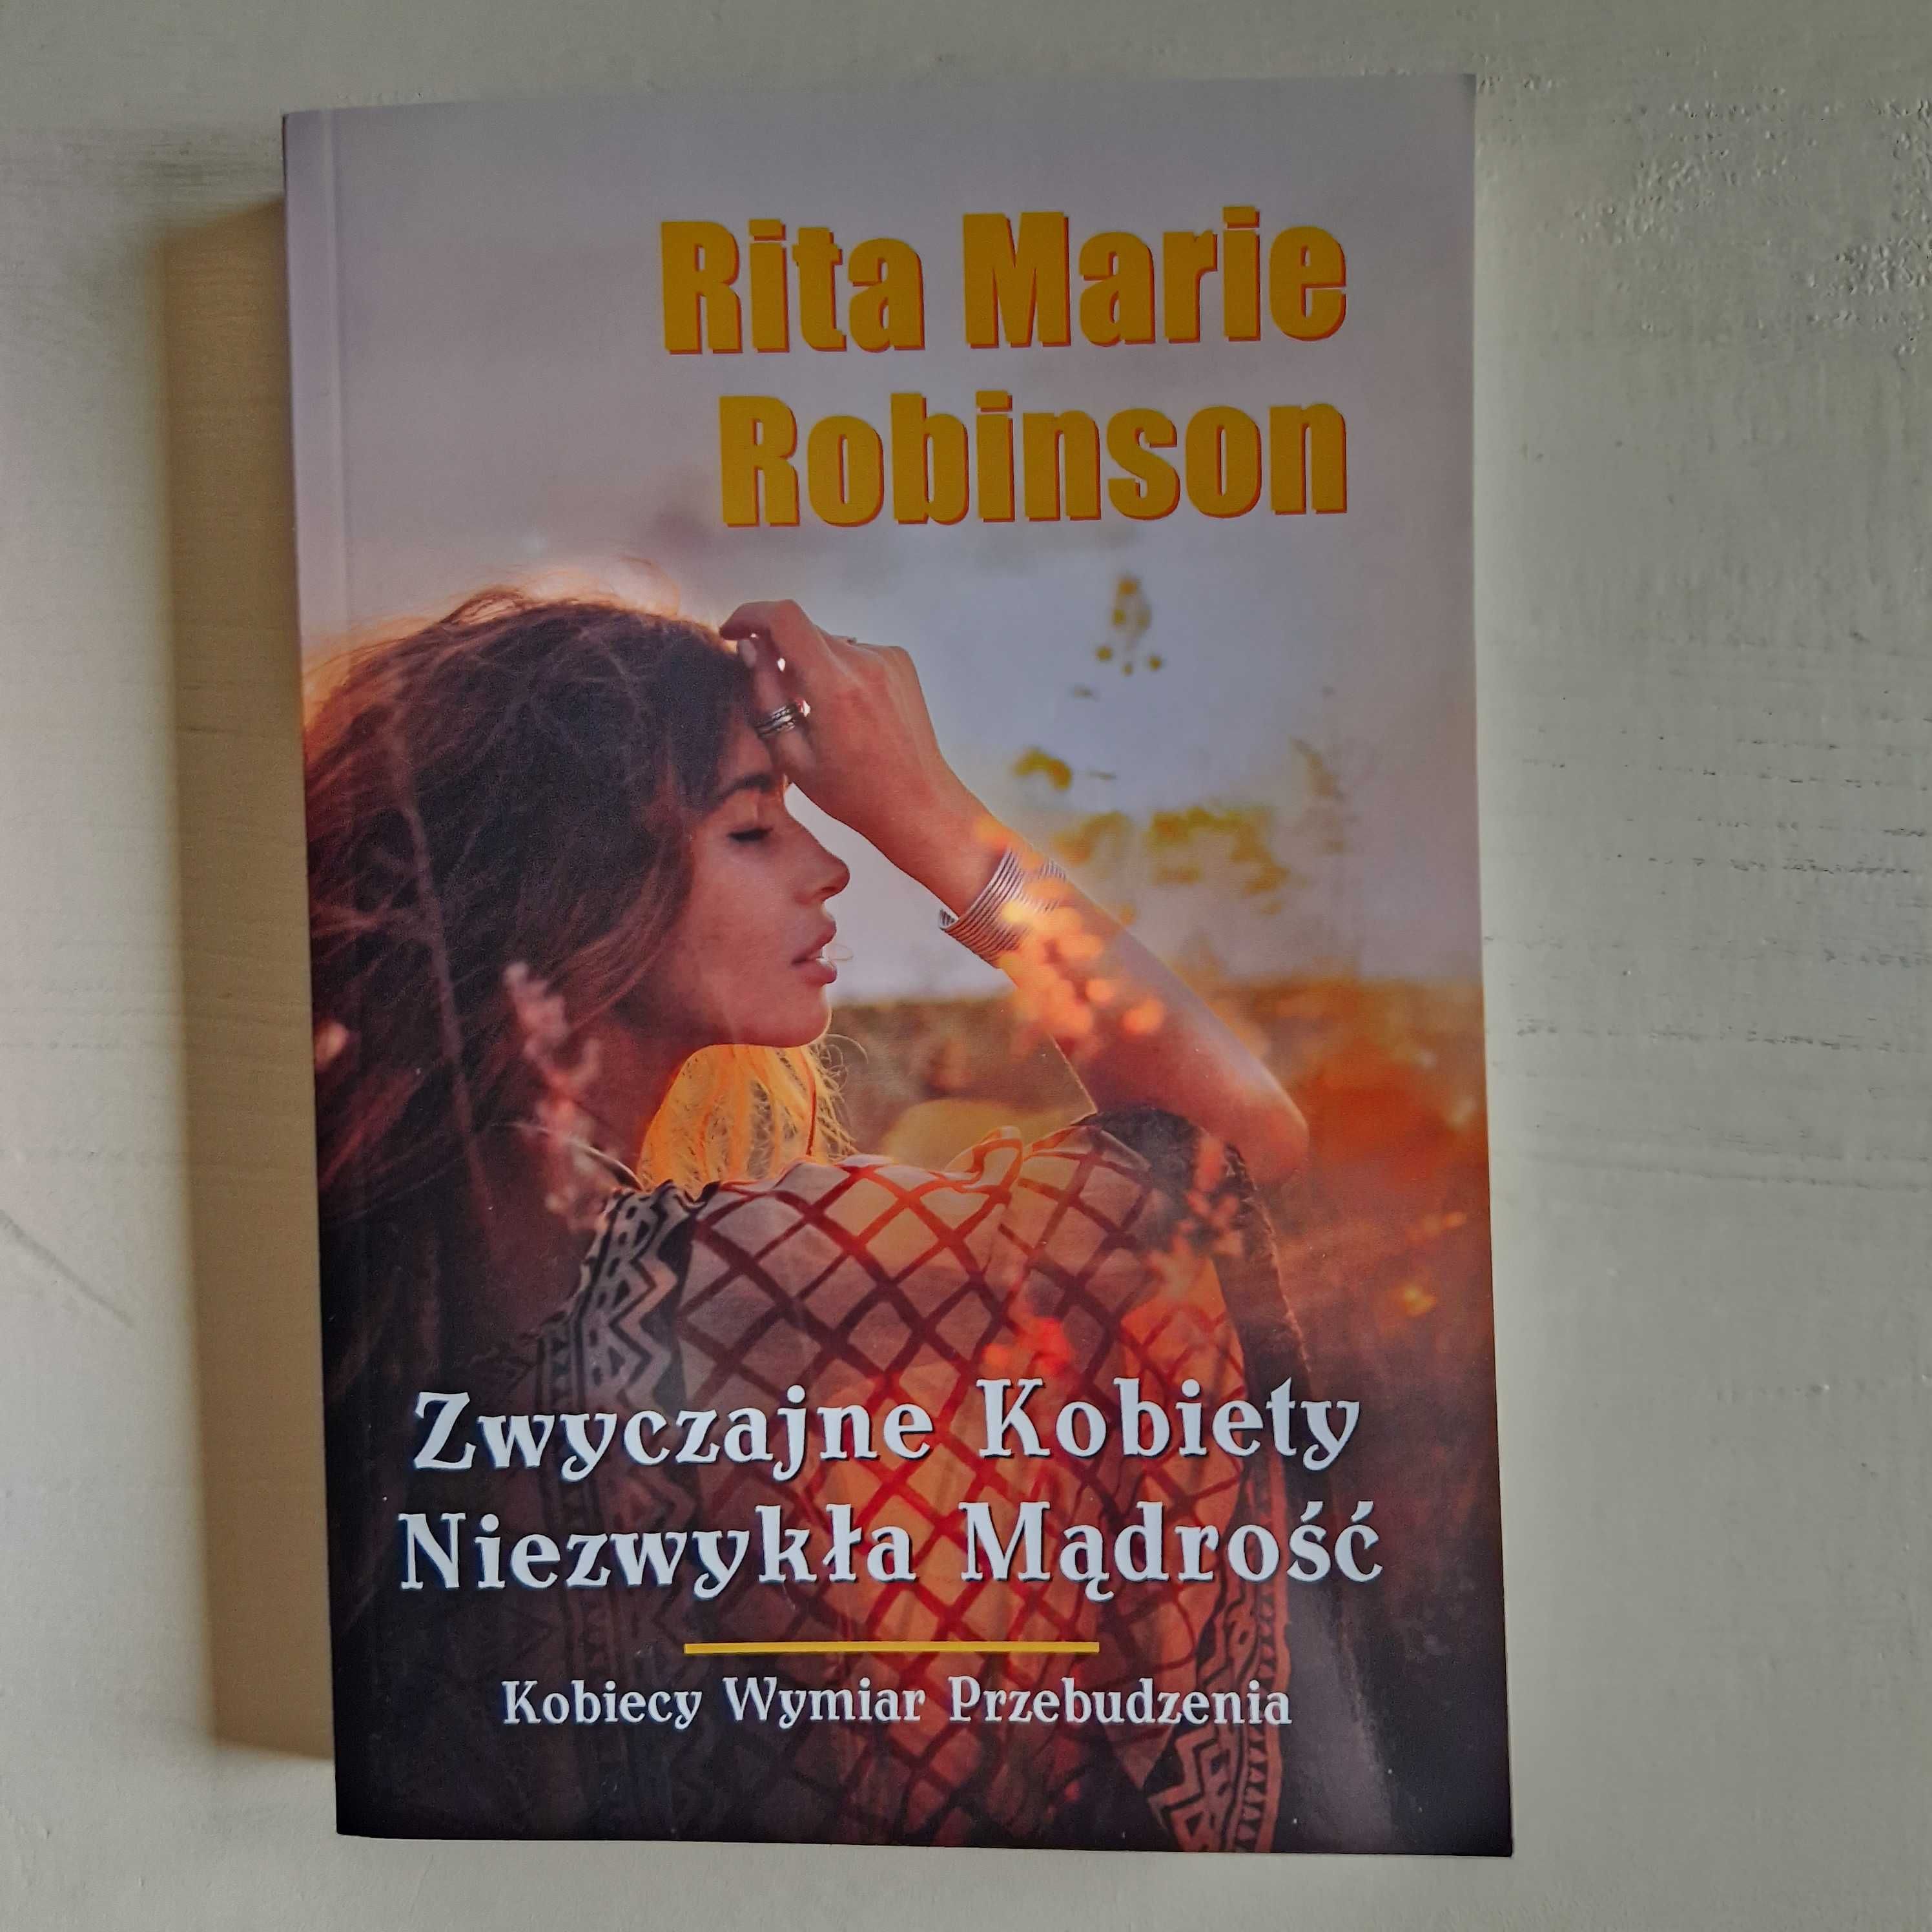 Zwyczajne kobiety niezwykła mądrość - Rita Marie Robonson